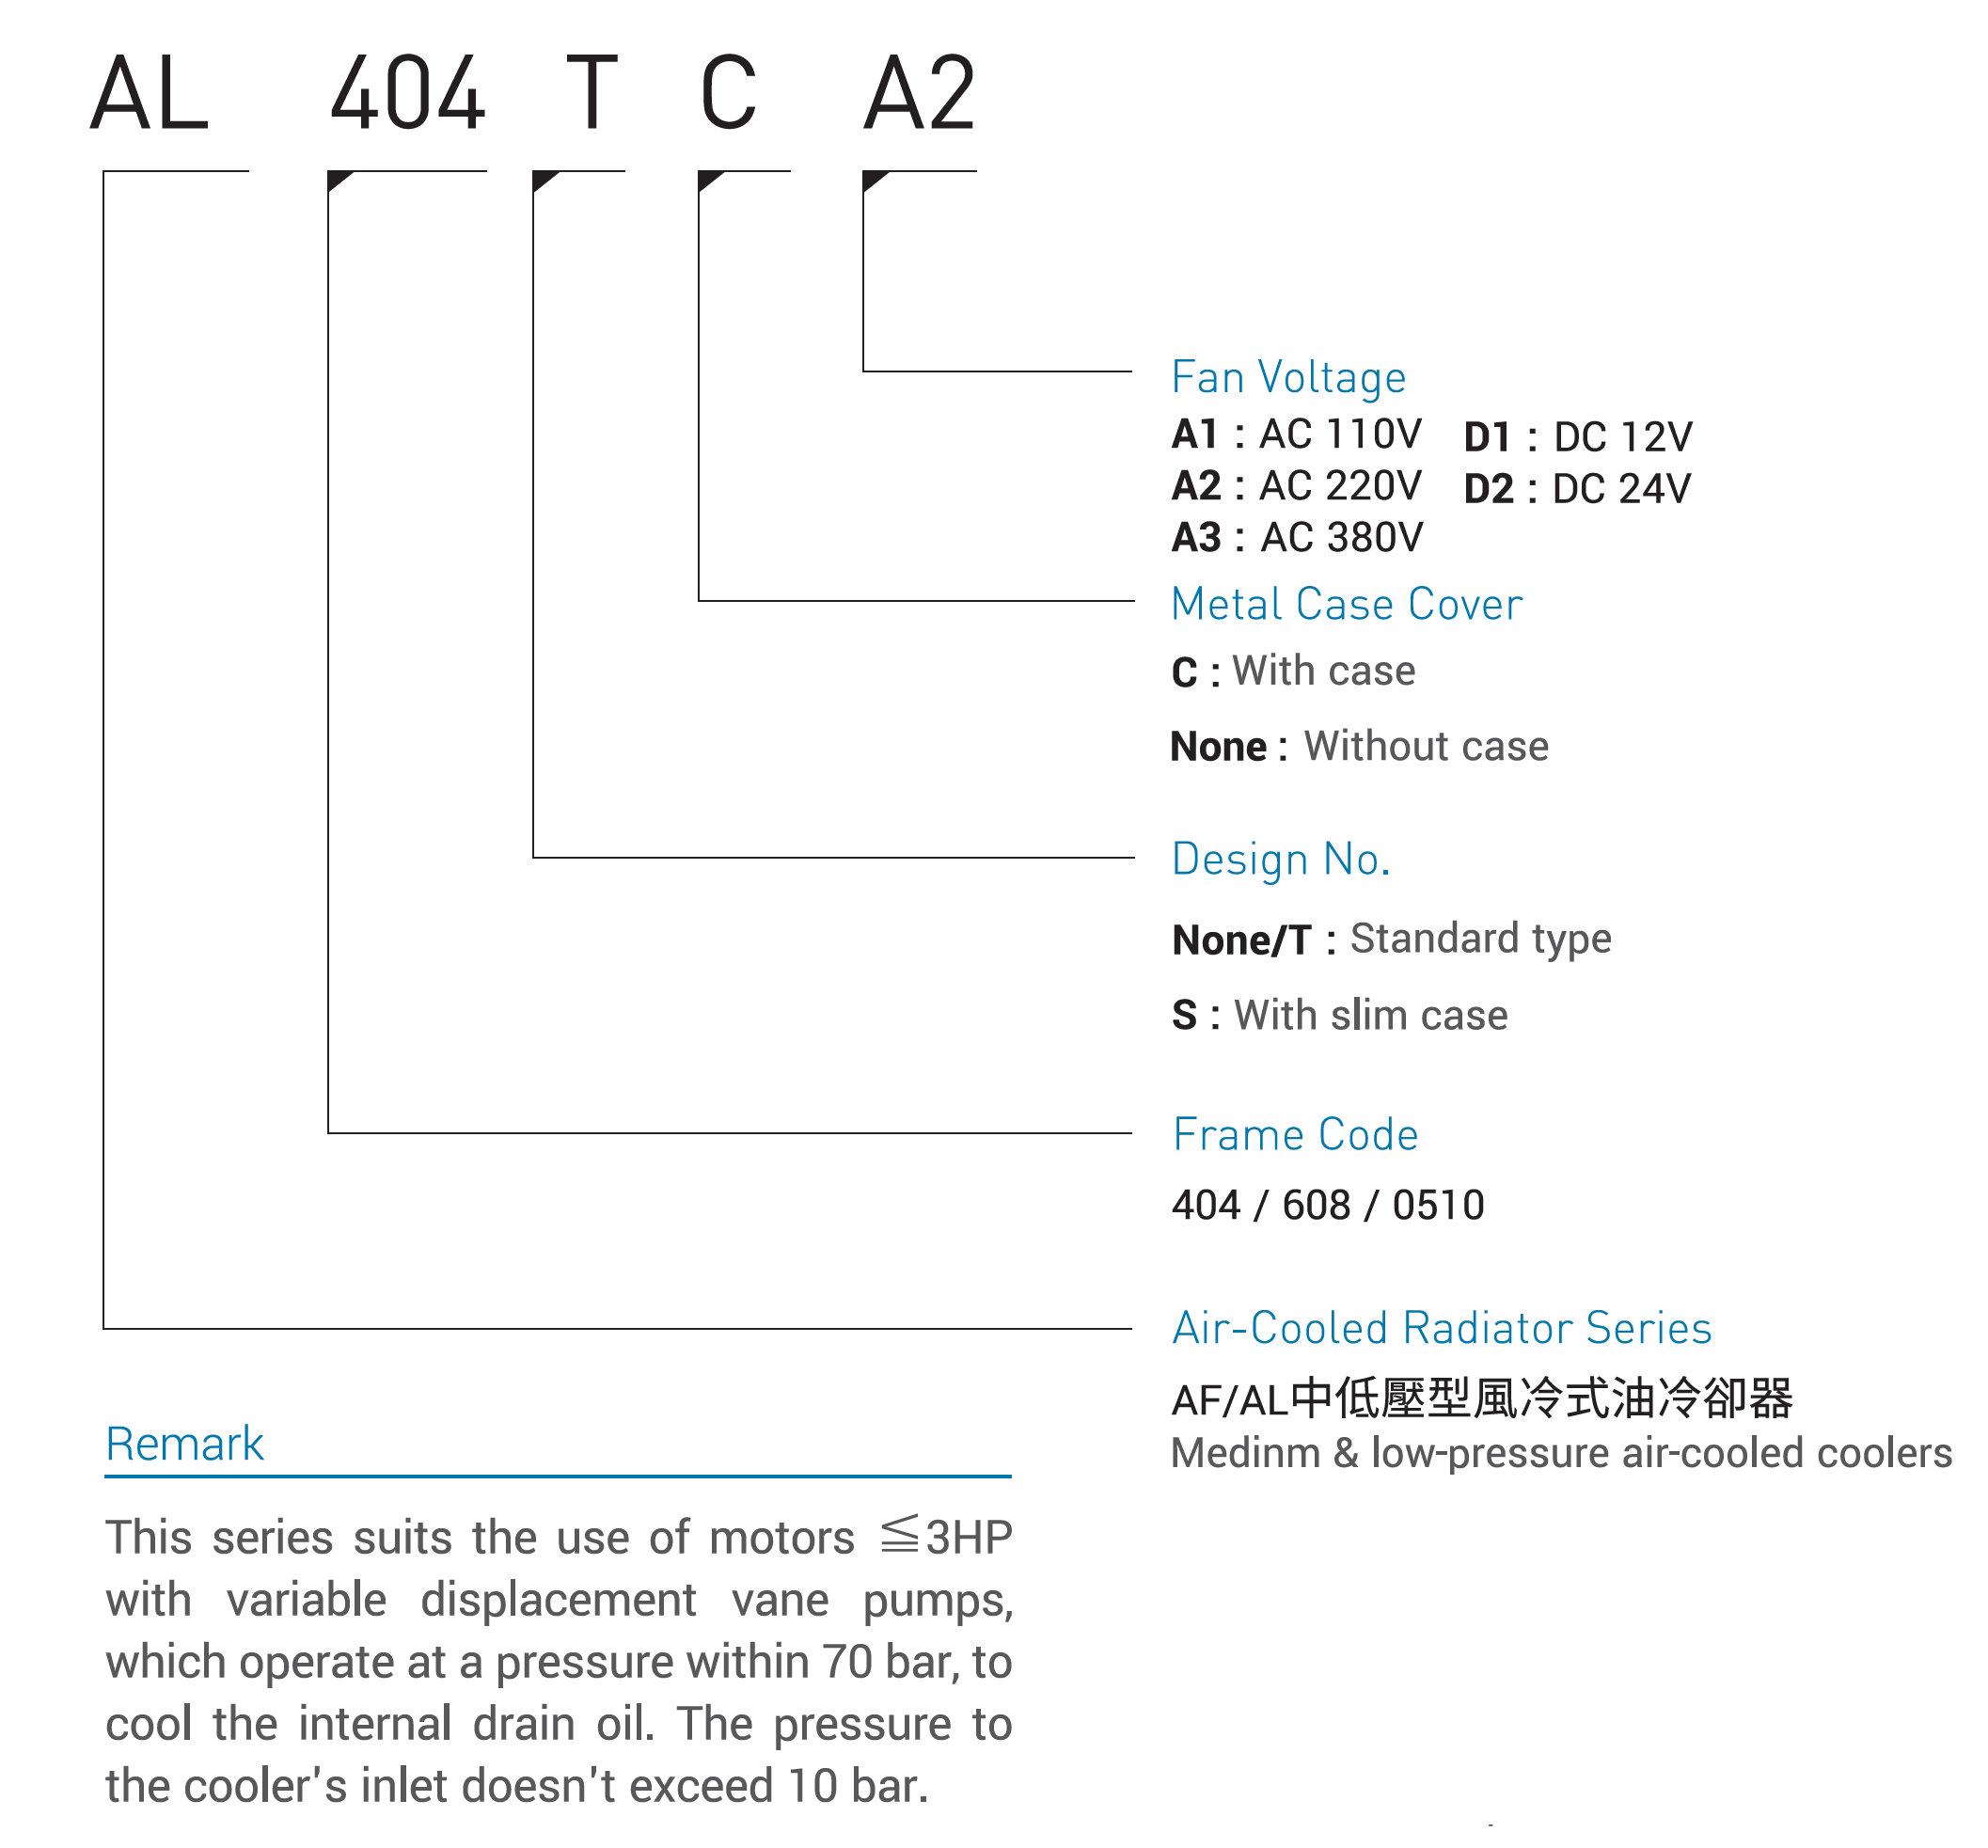 CMLMedium &amp; low-pressura aeris refrigeratum coolersModel Code, Quam ad ordinem